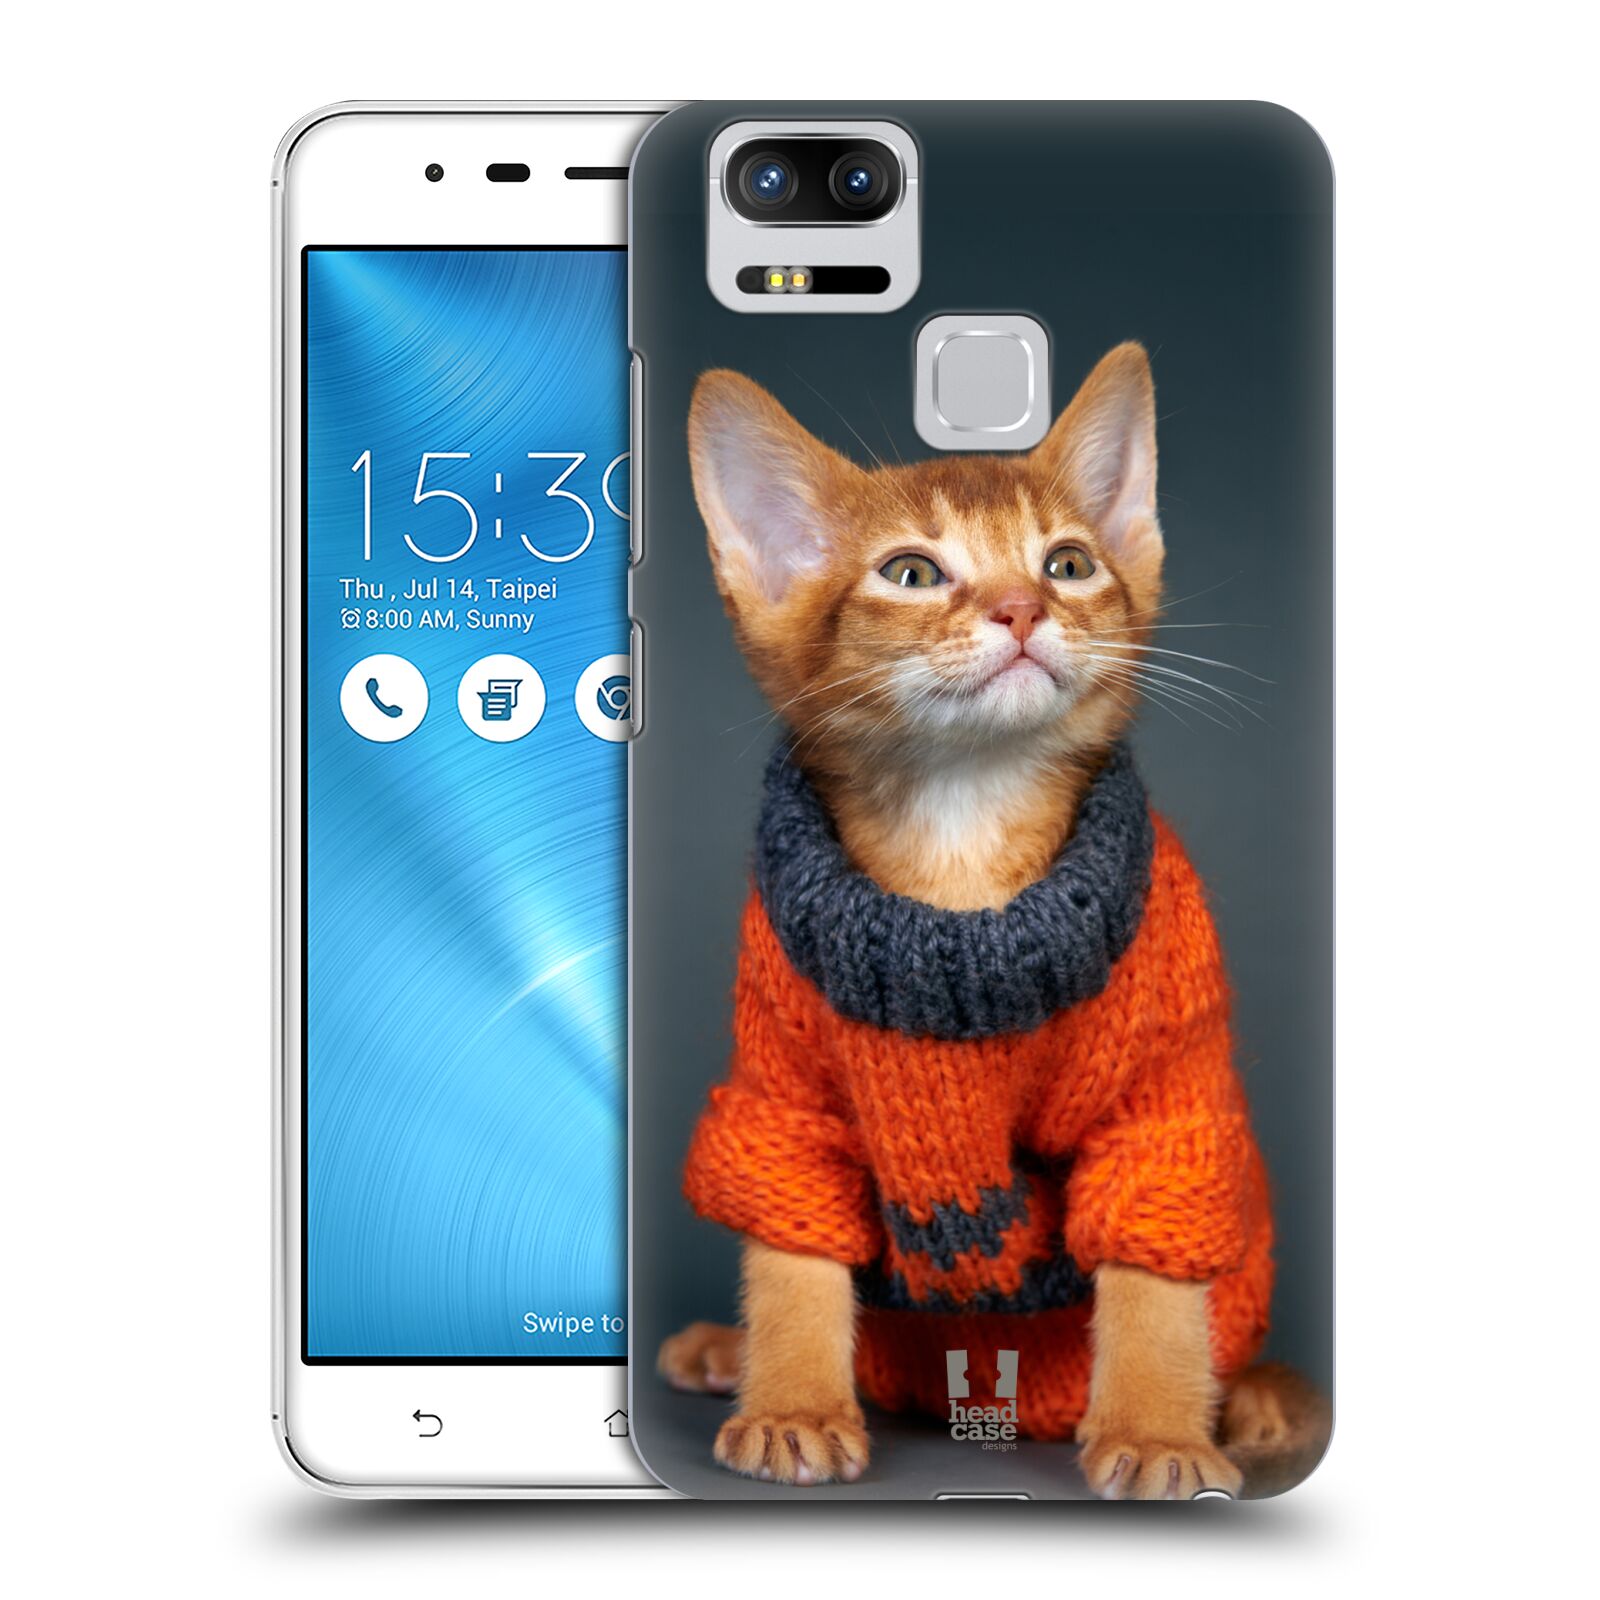 HEAD CASE plastový obal na mobil Asus Zenfone 3 Zoom ZE553KL vzor Legrační zvířátka kočička v oranžovém svetru